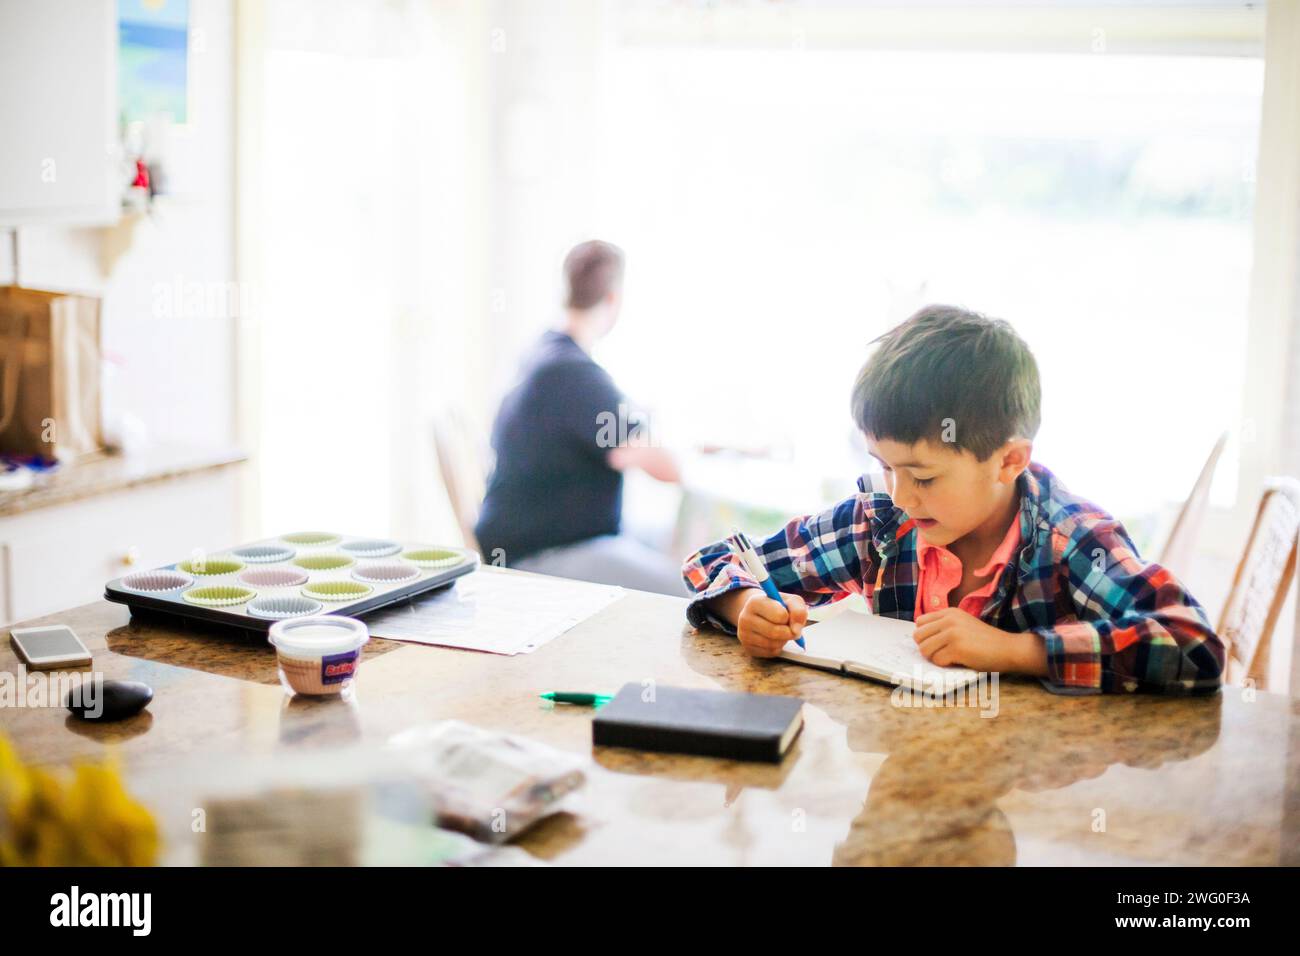 Un garçon japonais américain de 6 ans écrit dans son journal au comptoir de la cuisine. Un homme se dessine derrière lui, assis dans un coin cuisine. Banque D'Images